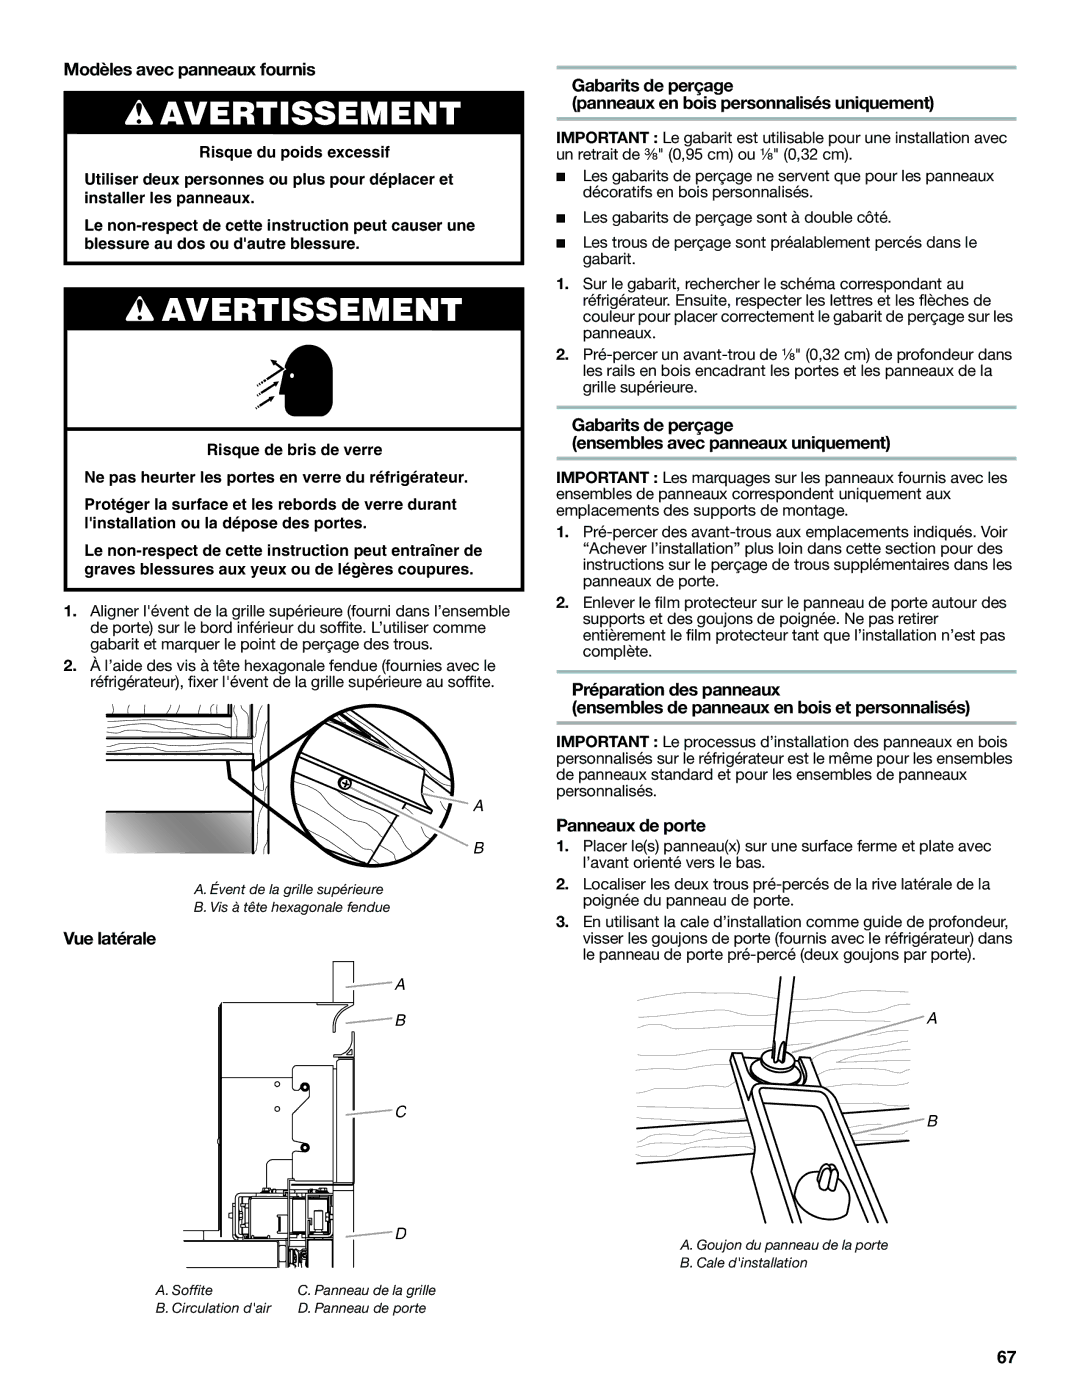 Jenn-Air W10379136A manual Modèles avec panneaux fournis, Gabarits de perçage Ensembles avec panneaux uniquement 